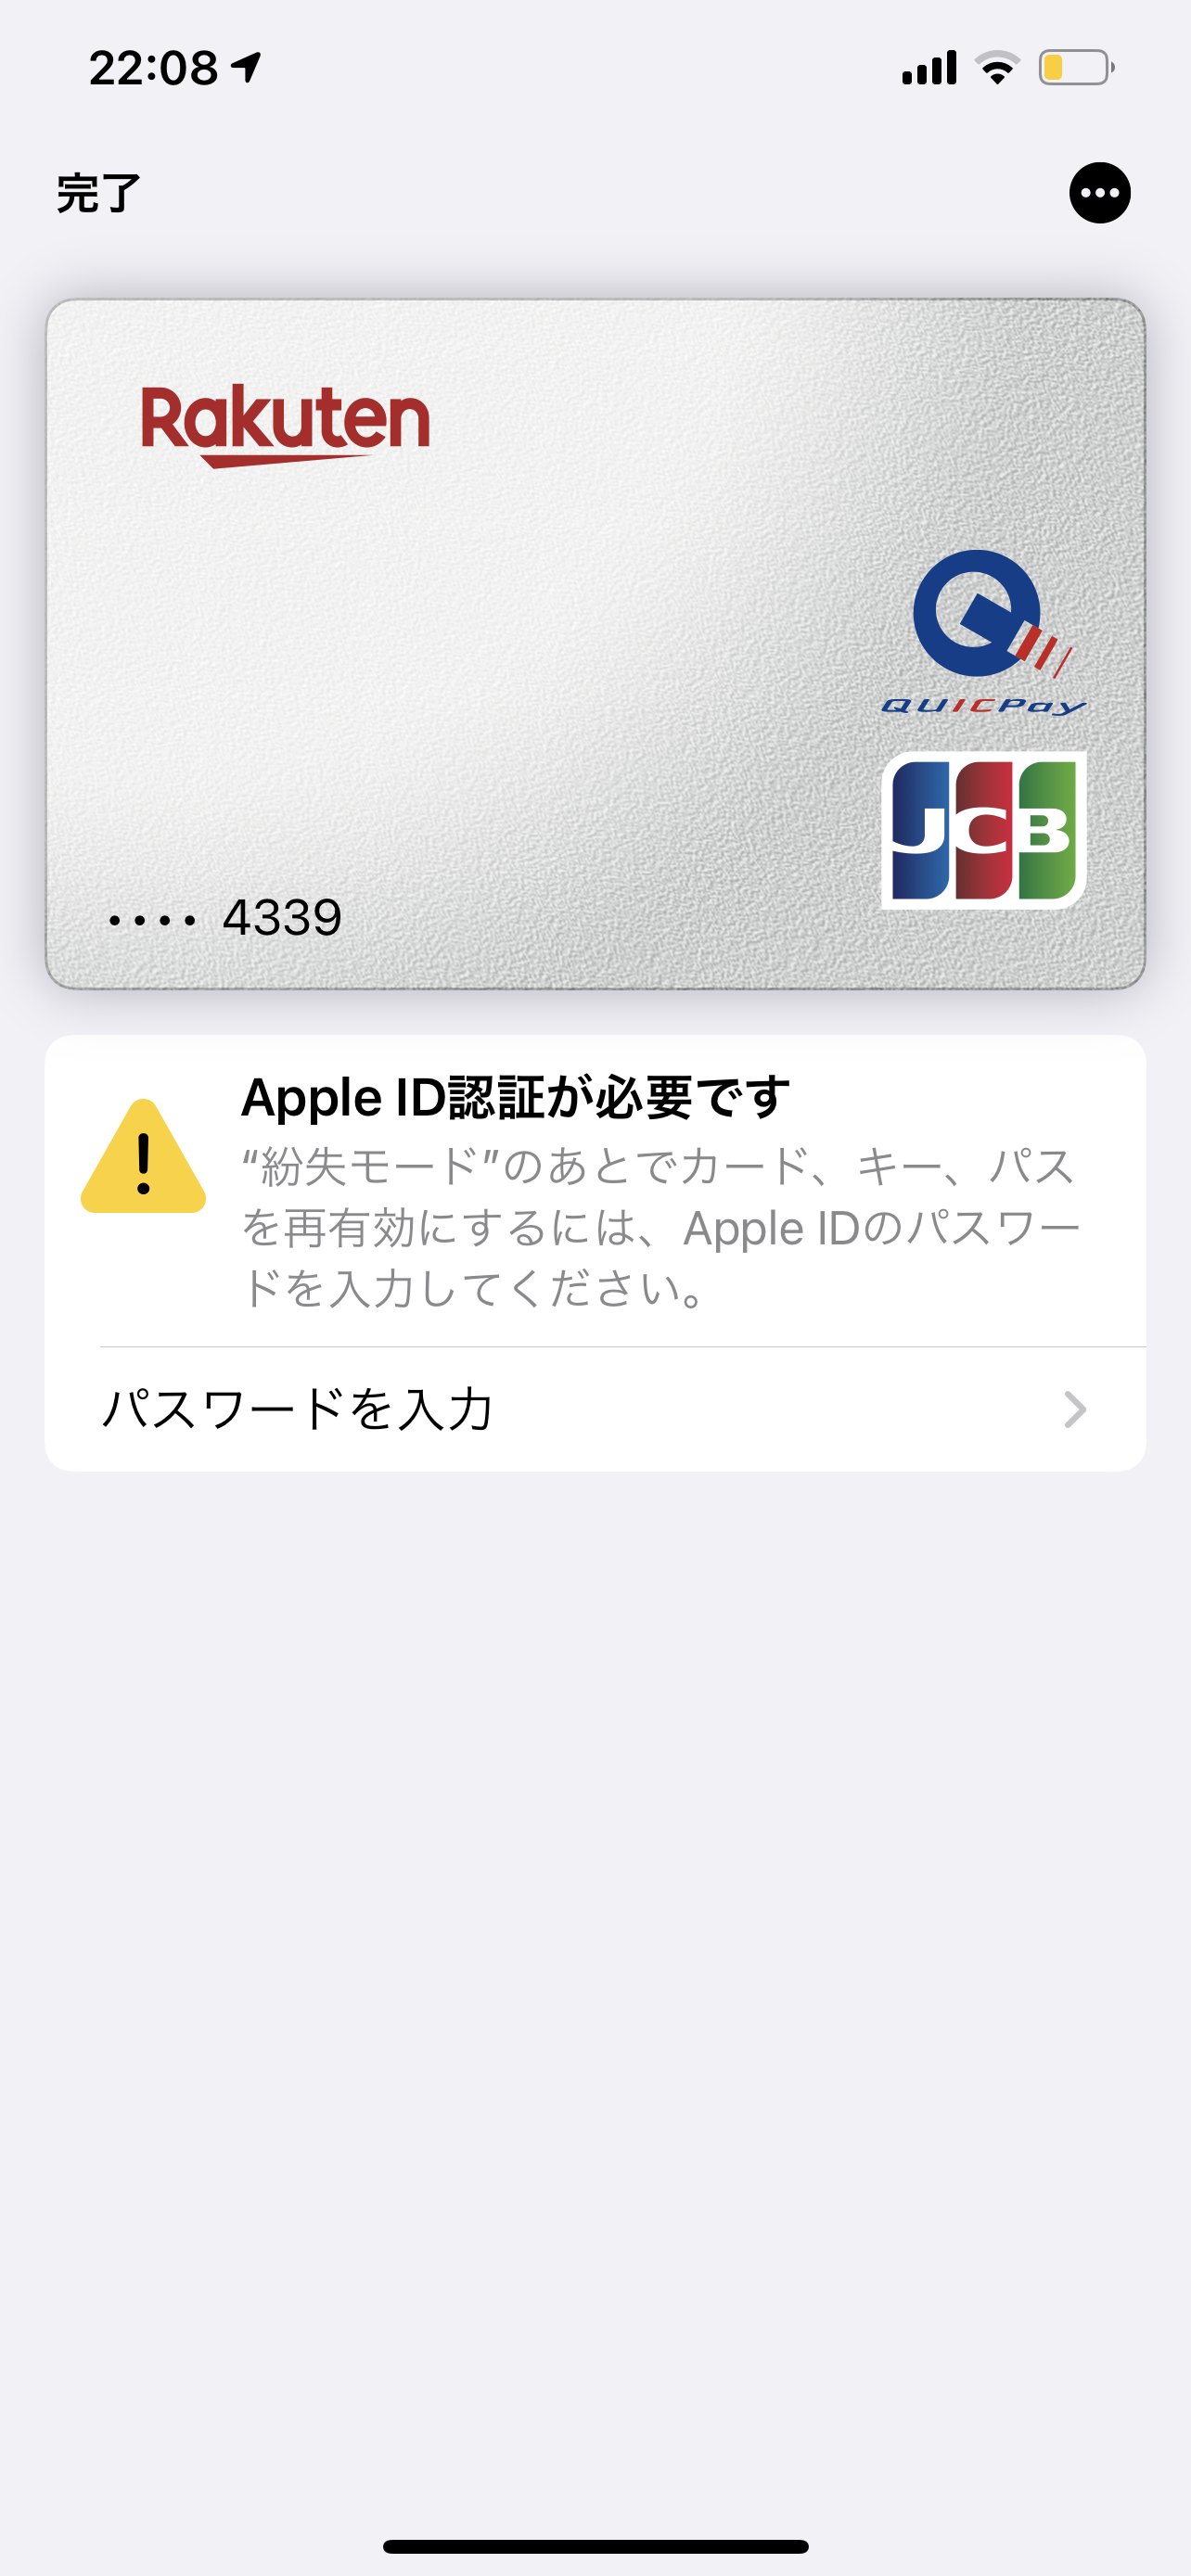 Apple IDは必要ですか？